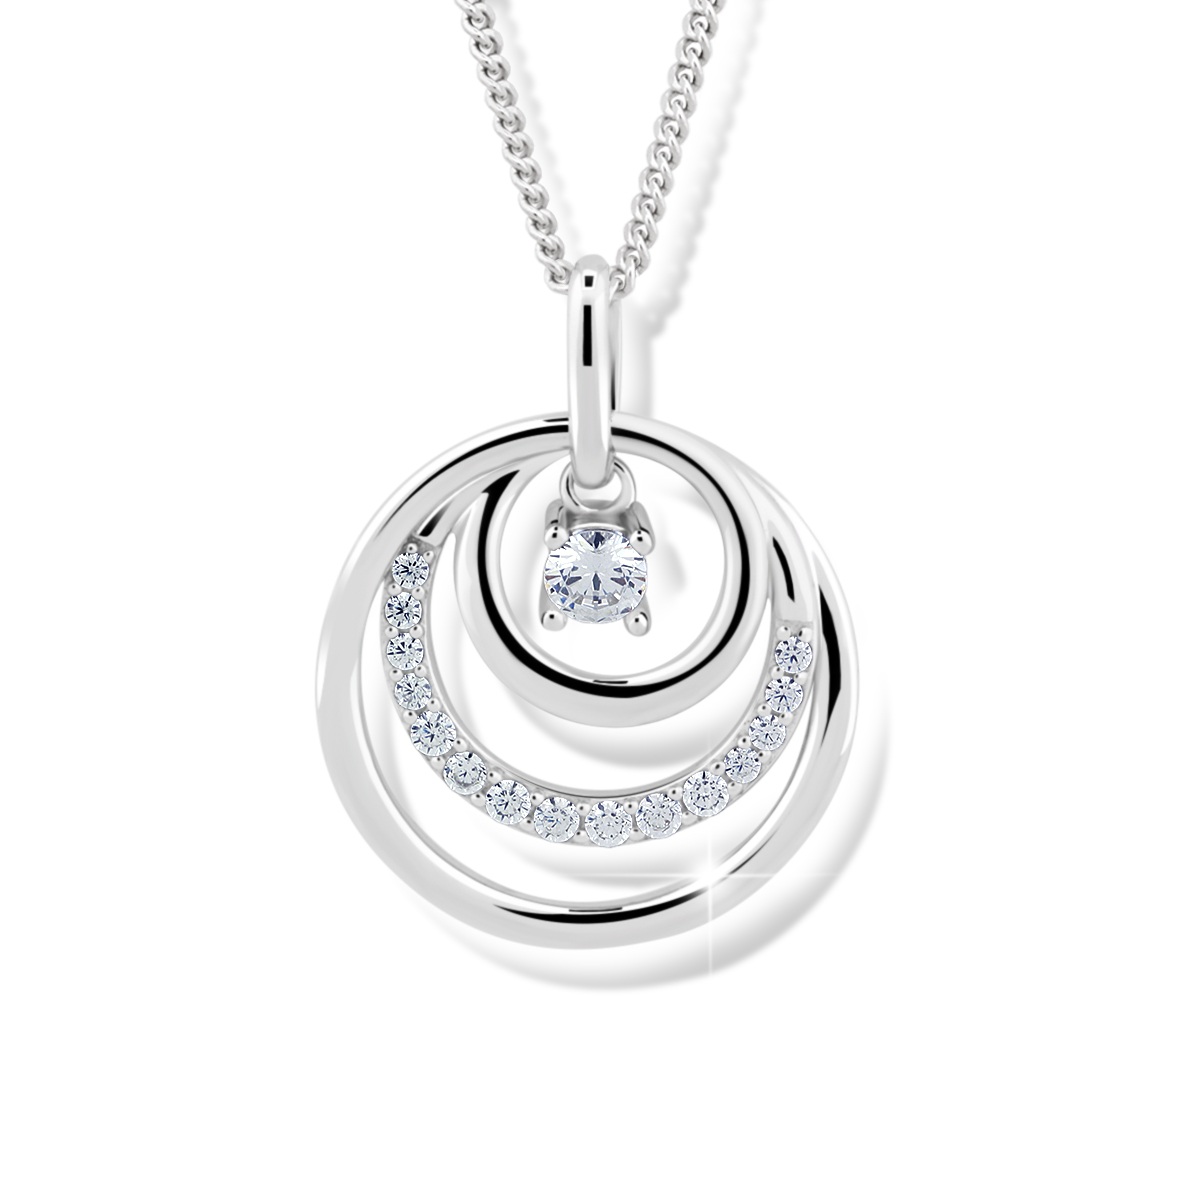 Modesi Překrásný náhrdelník ze stříbra J328CZ-W (řetízek, přívěsek)